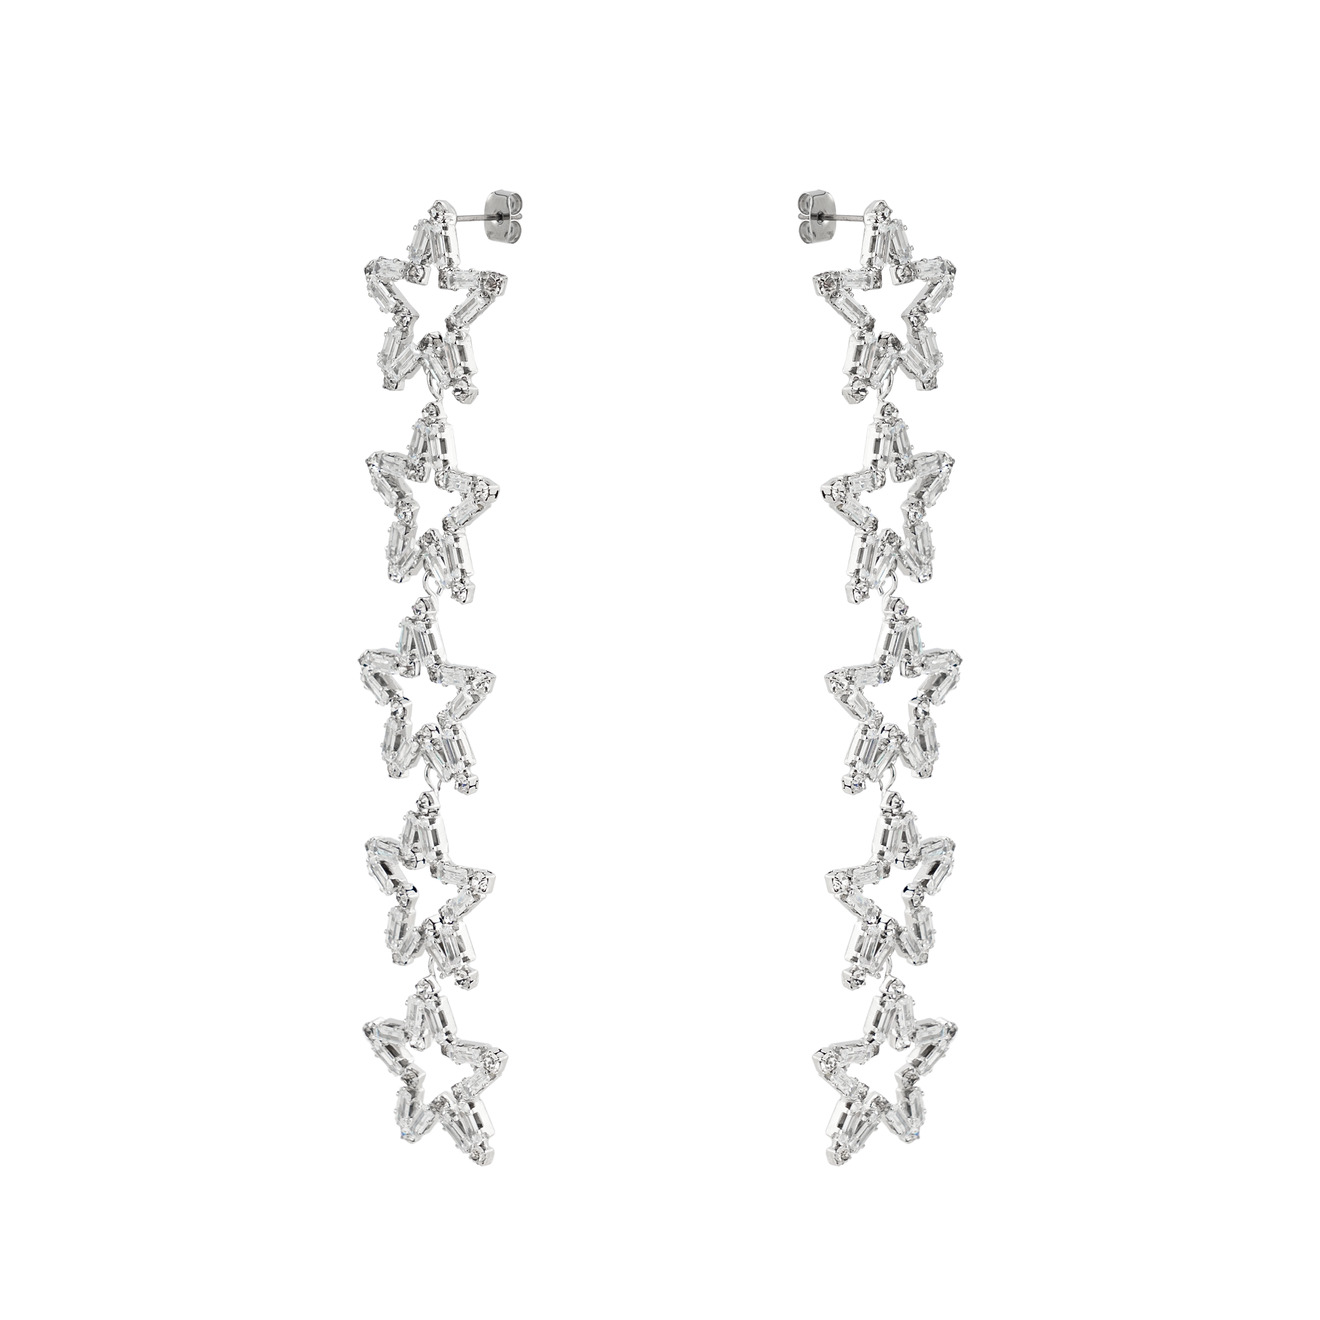 Herald Percy Серебристые серьги-дорожки из звезд с кристаллами herald percy серебристые серьги из разных дорожек